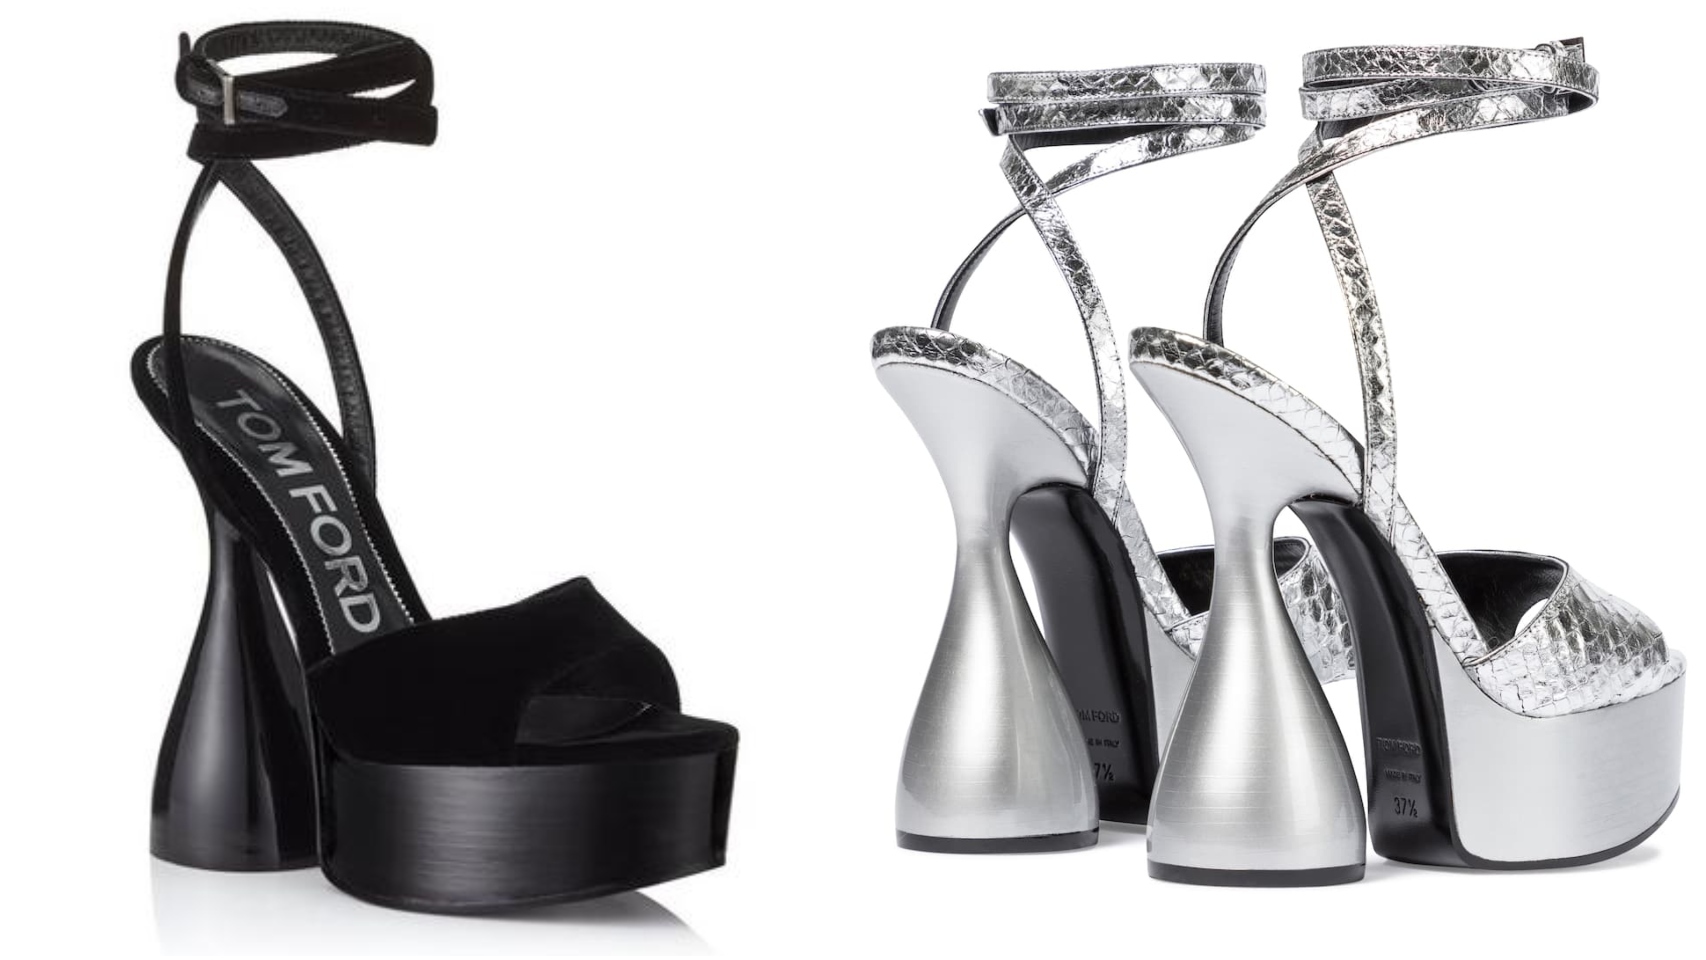 Las 'disco heels' de Tom Ford en negro y plata.